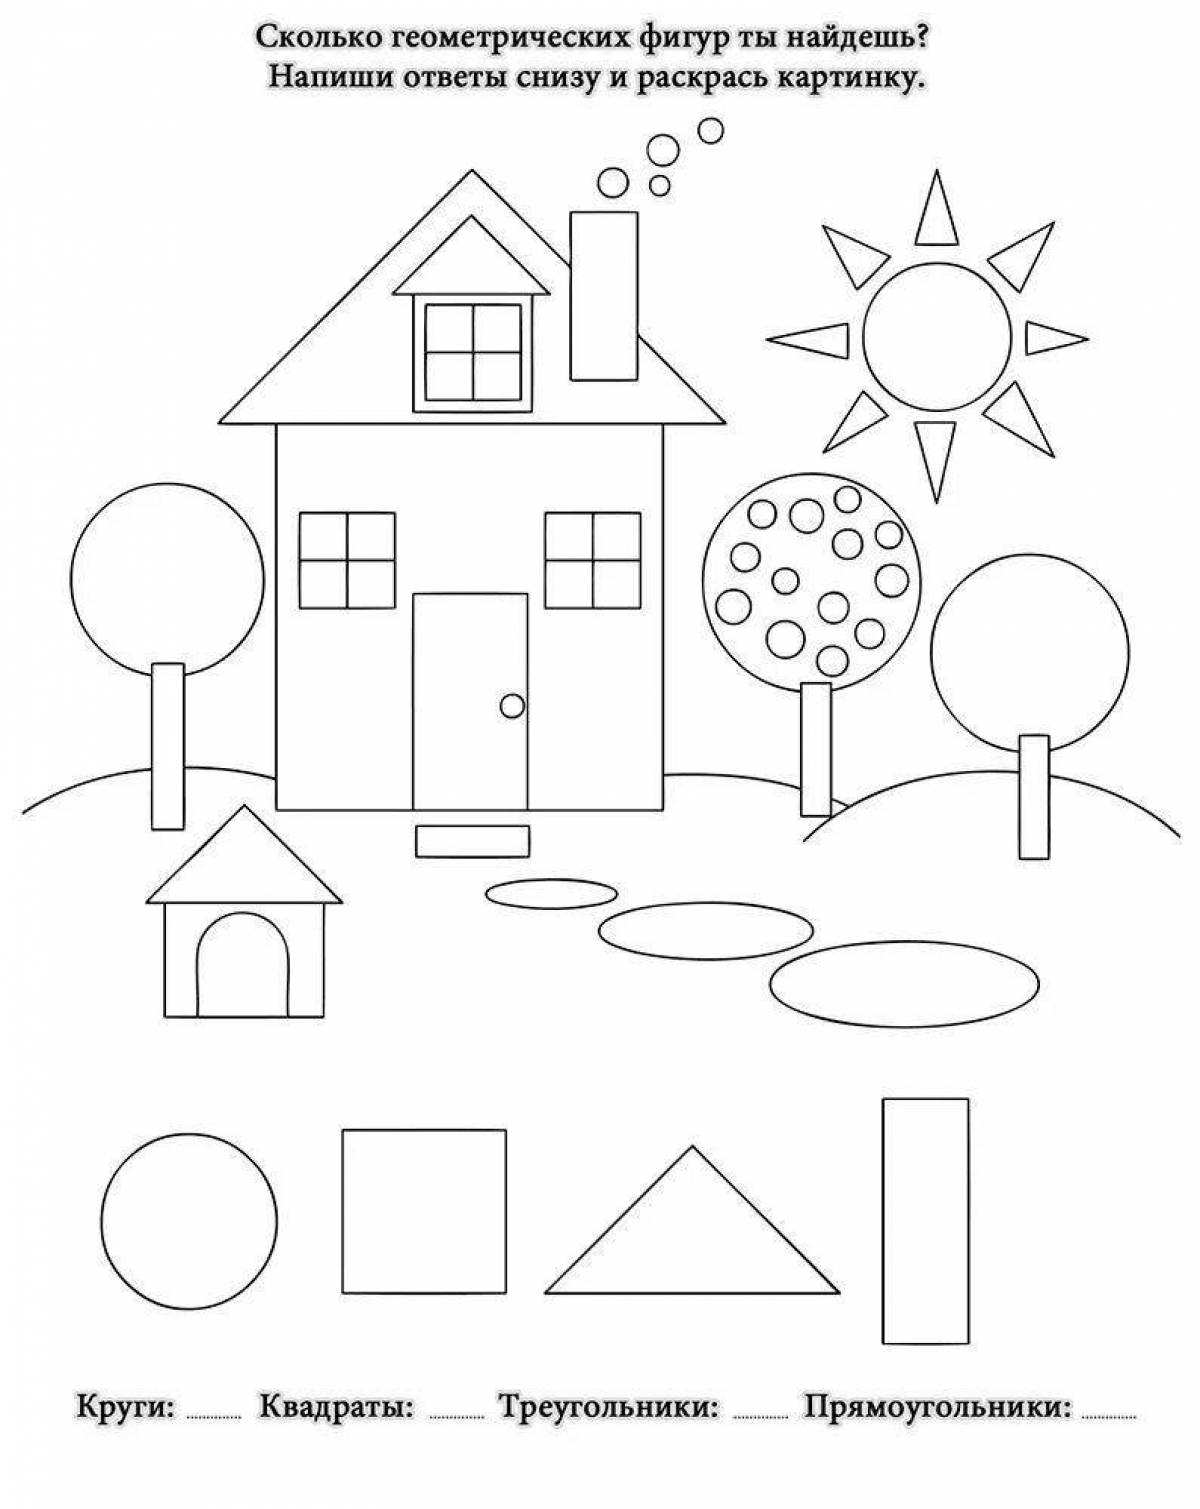 Увлекательная раскраска геометрических фигур для детей 4-5 лет